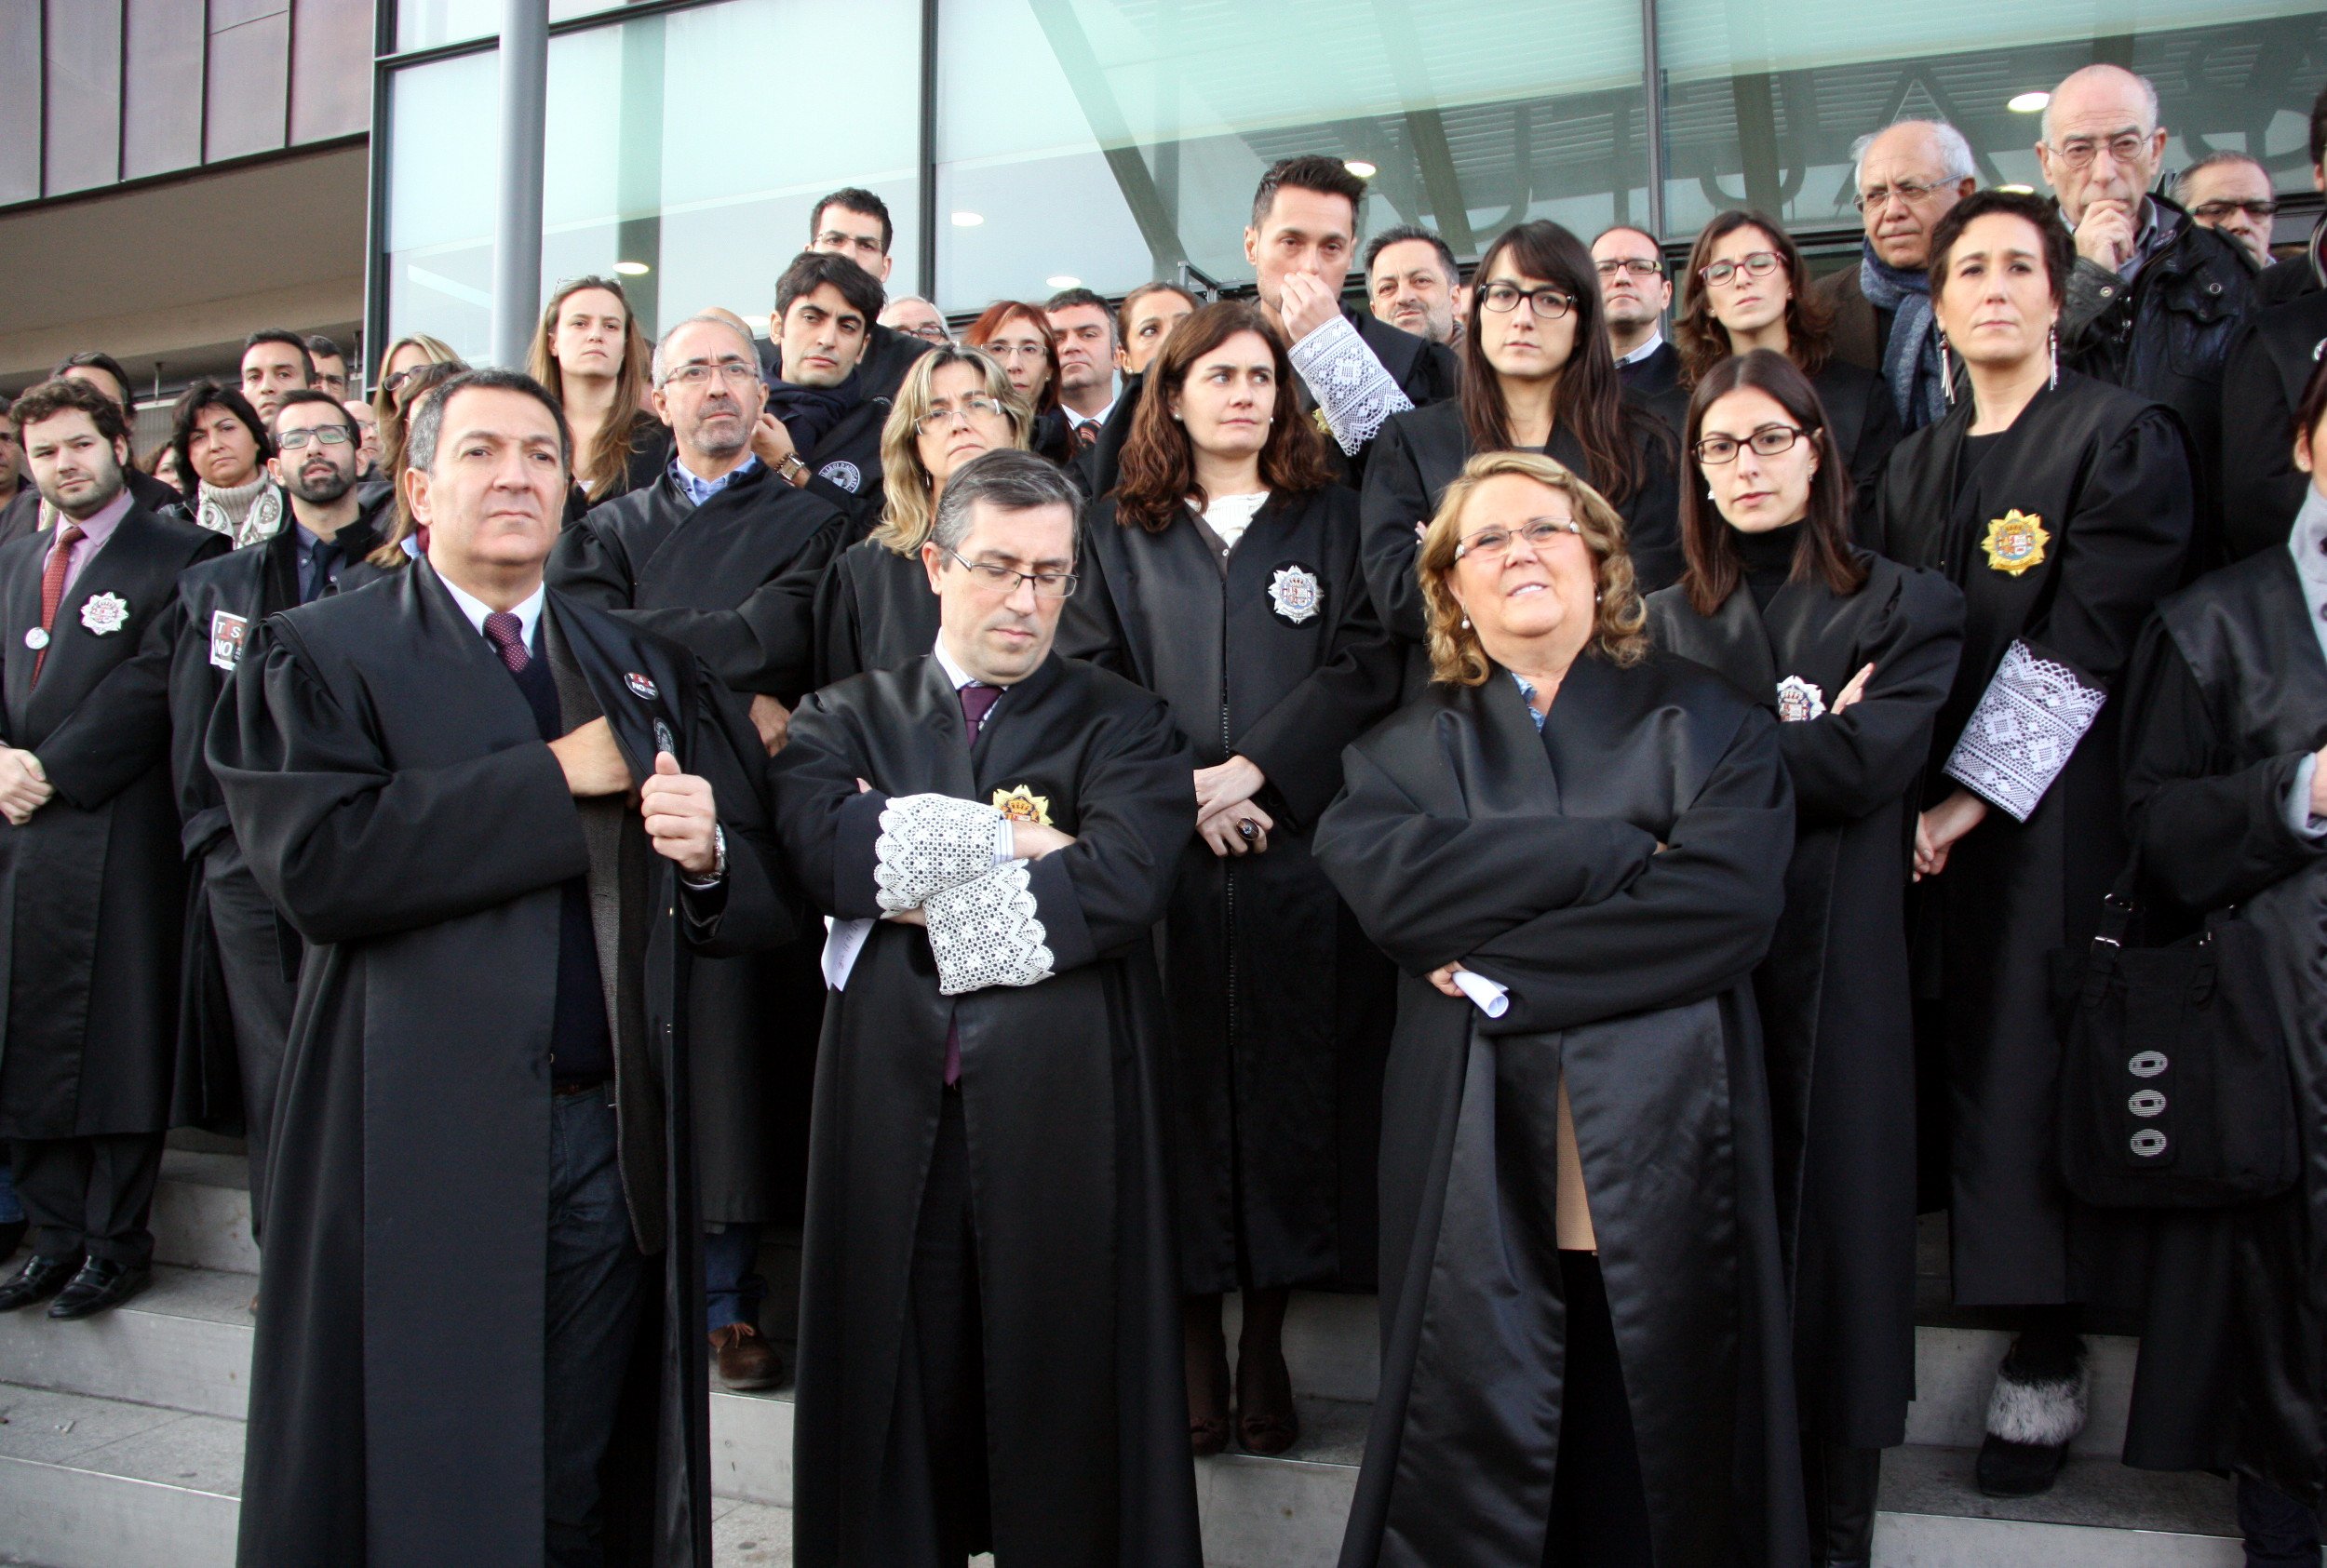 Jutges i fiscals amenacen de fer vaga si no es garanteix la independència judicial